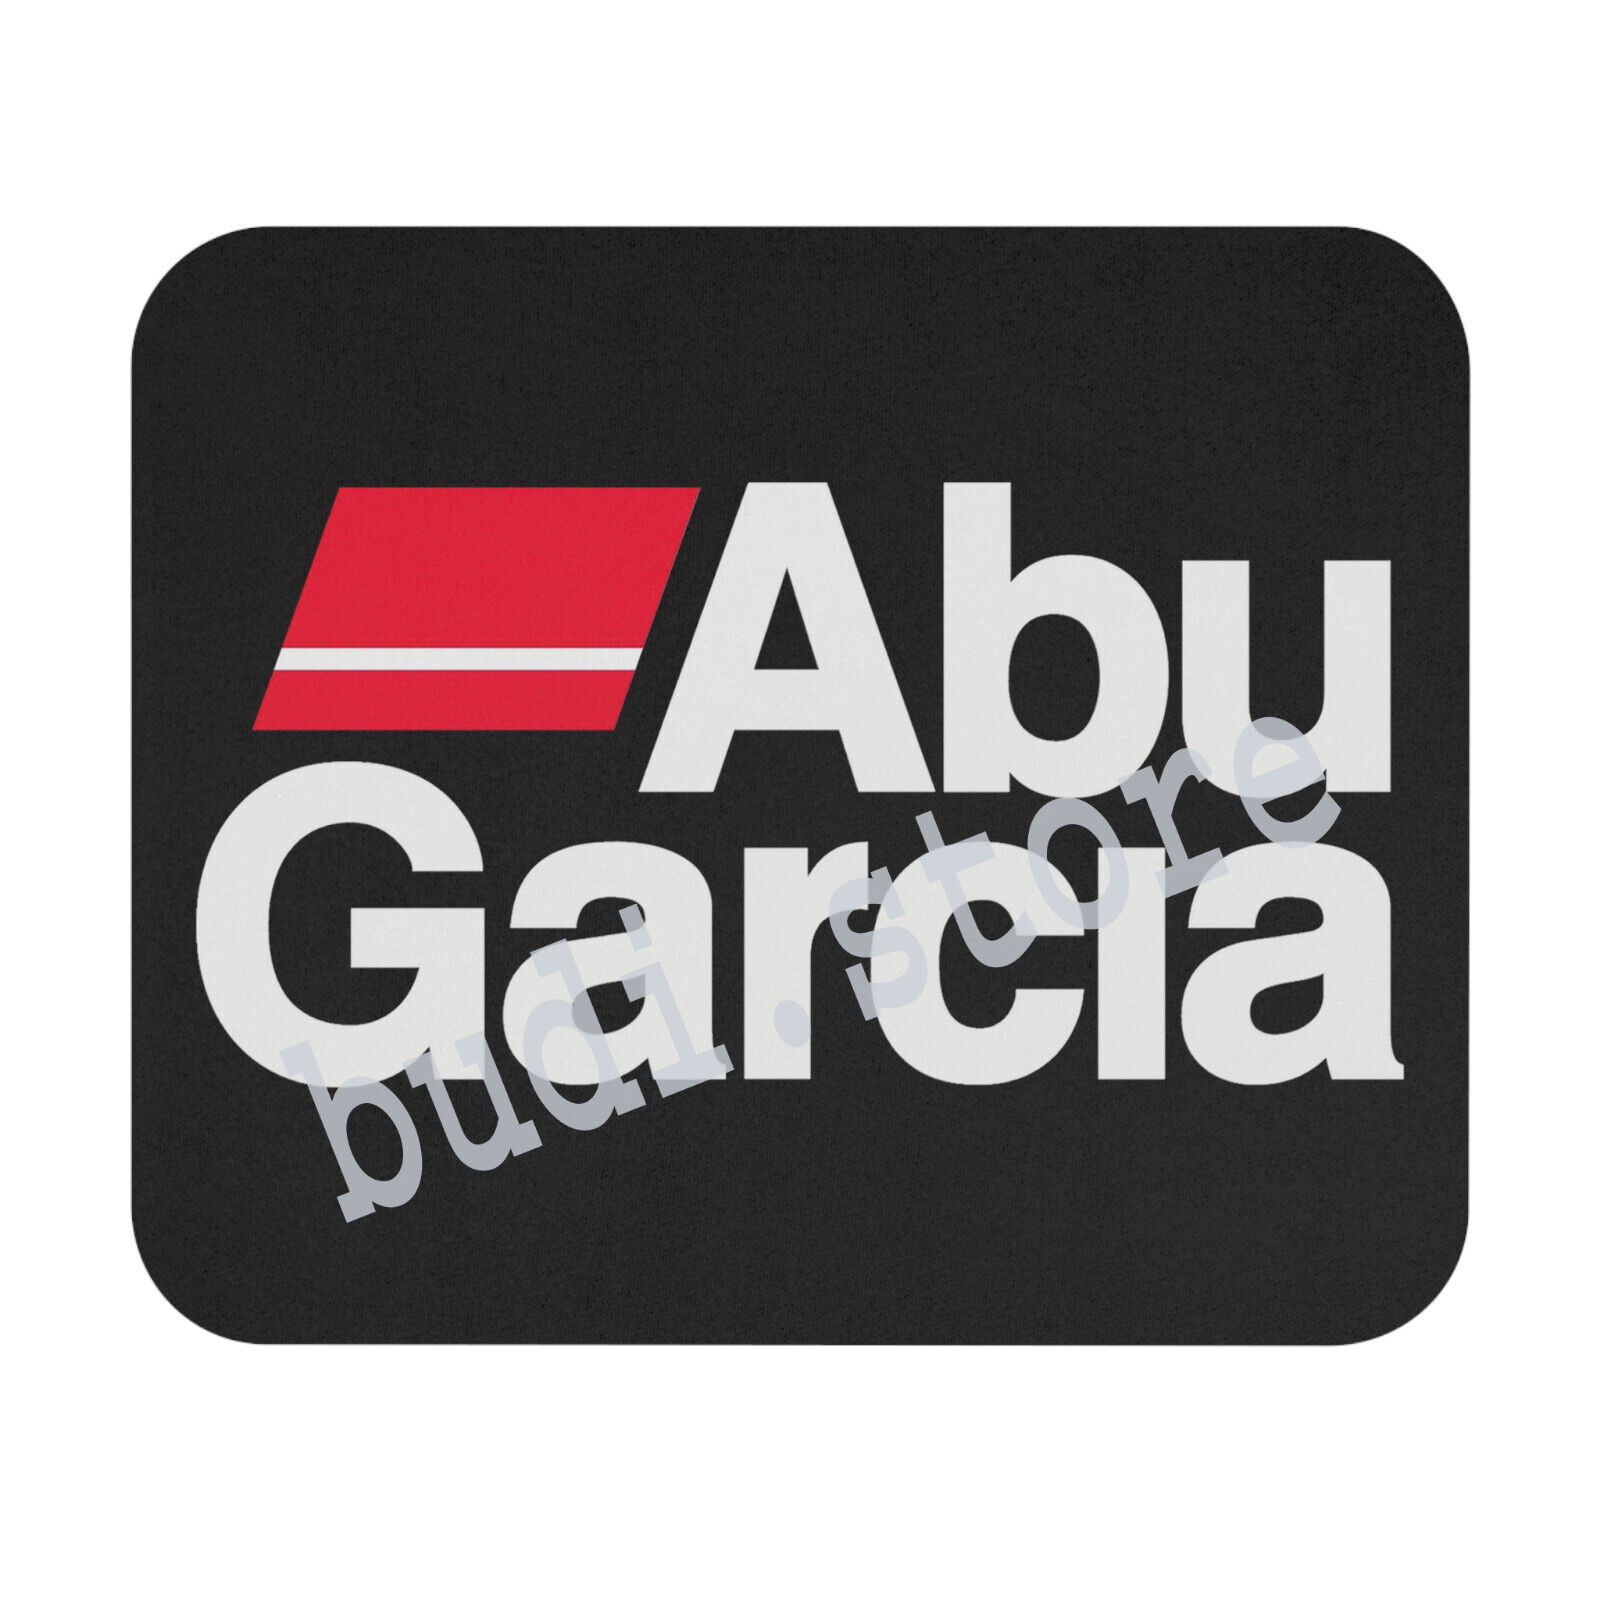 Abu Garcia Fishing Logo Black Mousepad Desk Mat Gaming Mouse Pad